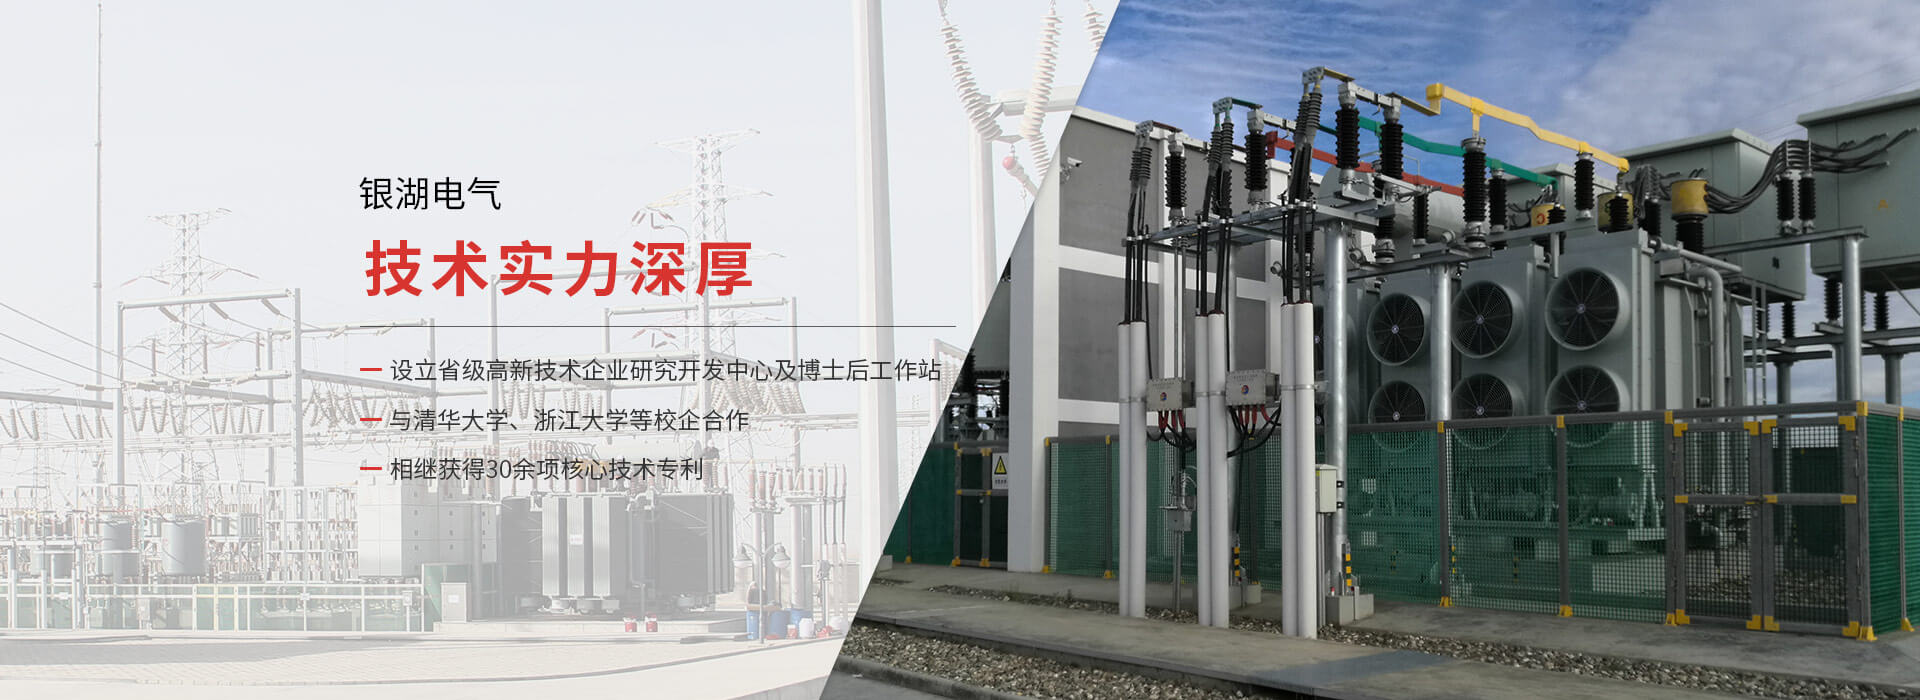 杭州银湖电气设备有限公司